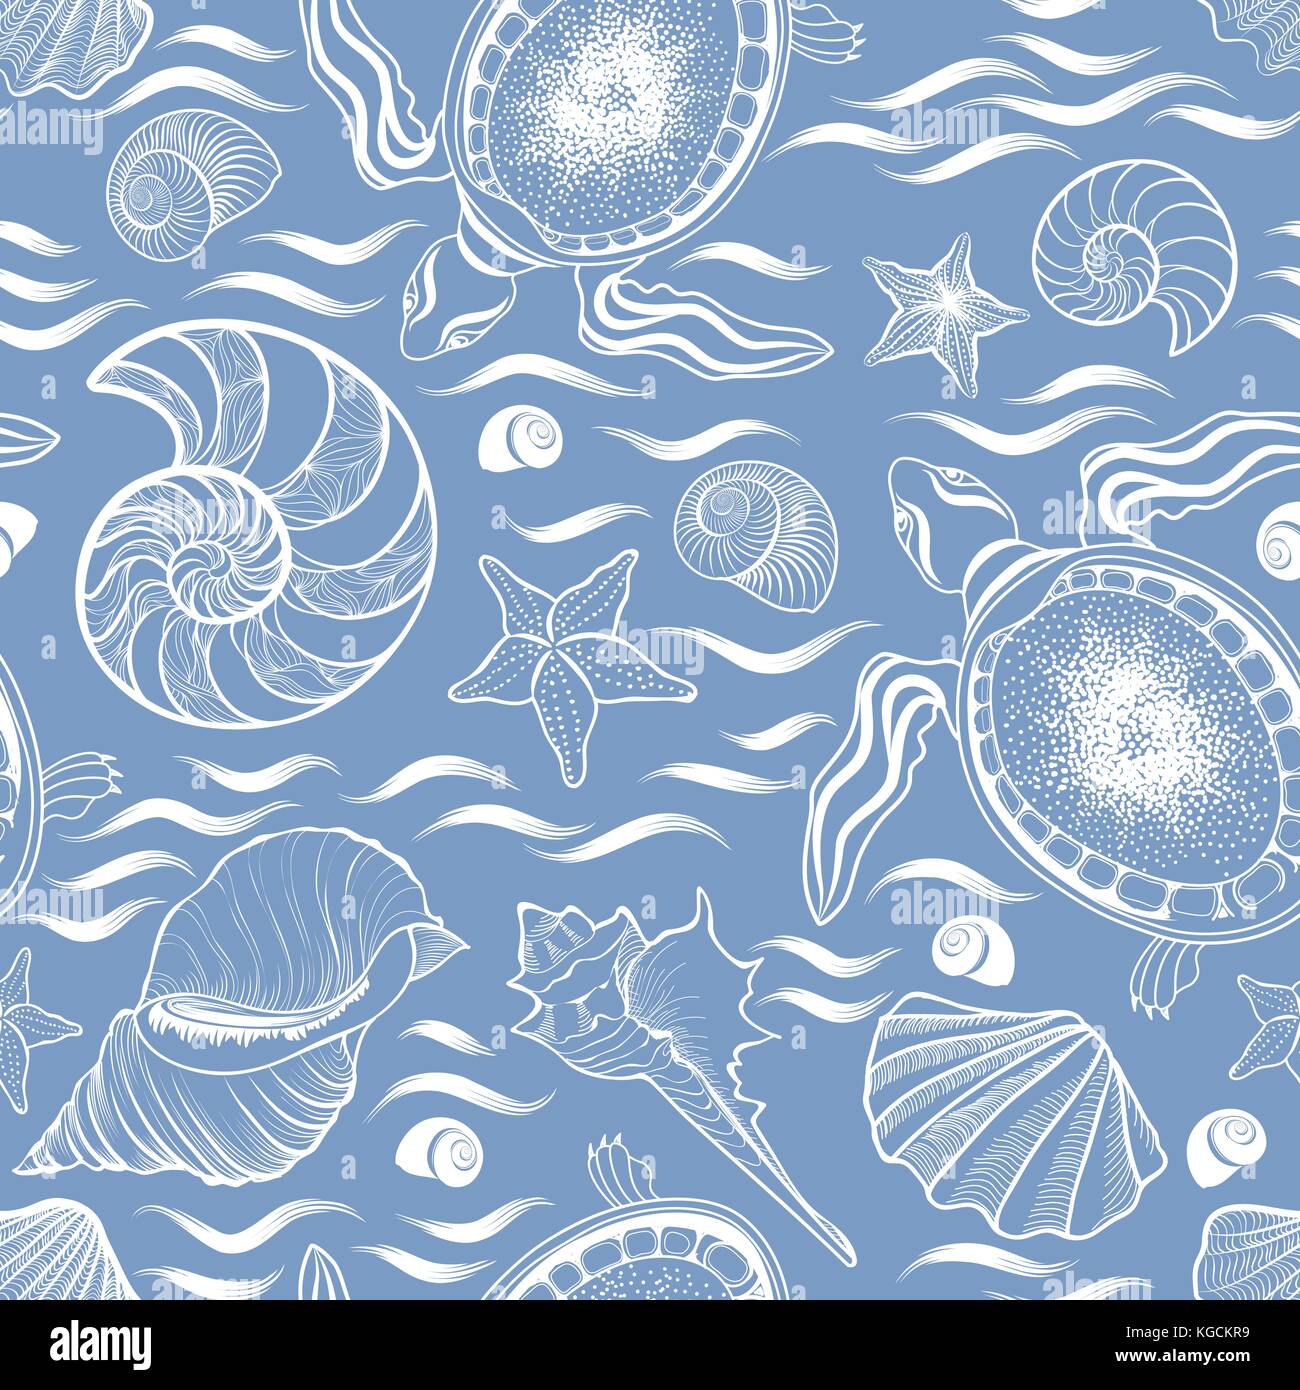 Mensonge marine modèle homogène. seashell, tortue, mollusque, vagues de l'arrière-plan Illustration de Vecteur